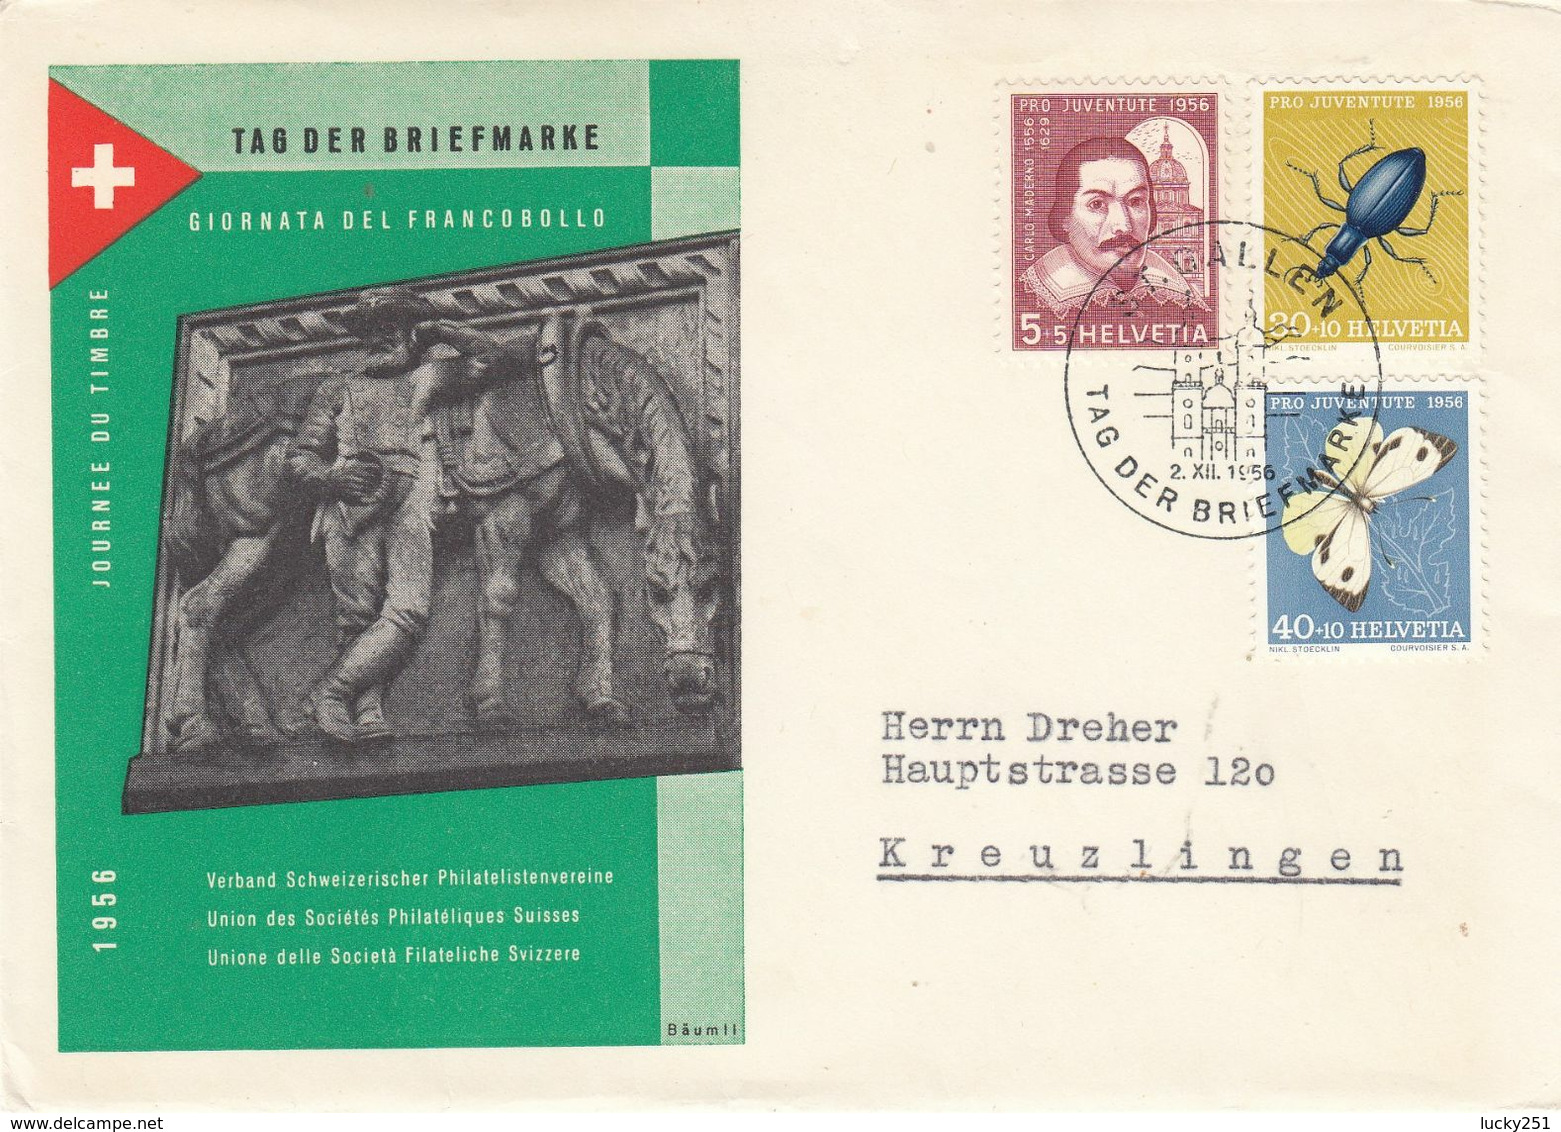 Suisse - Année 1956 - Oblt 02/12/1956 - Tag Der Biefmarke, Journée Du Timbre - - Covers & Documents